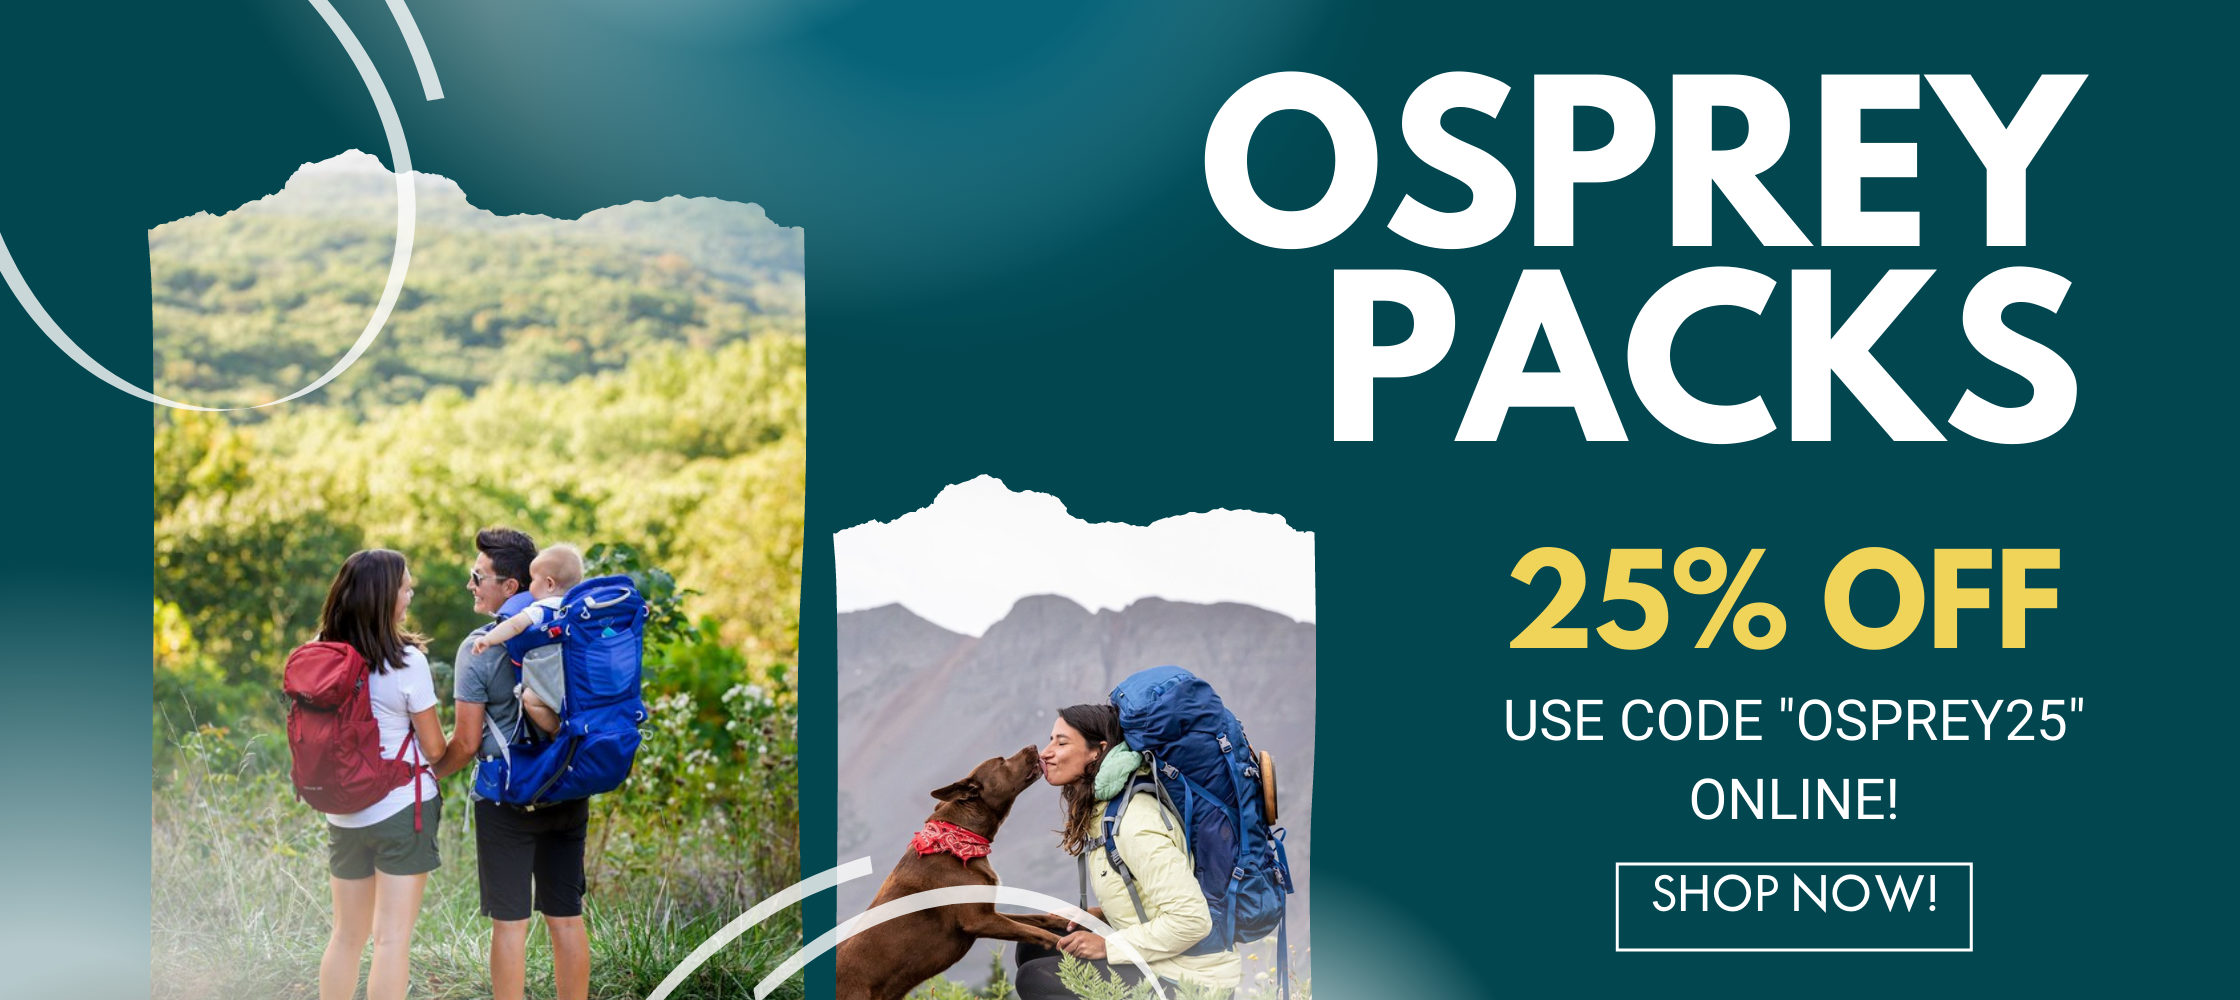 Osprey Packs 25% Off!